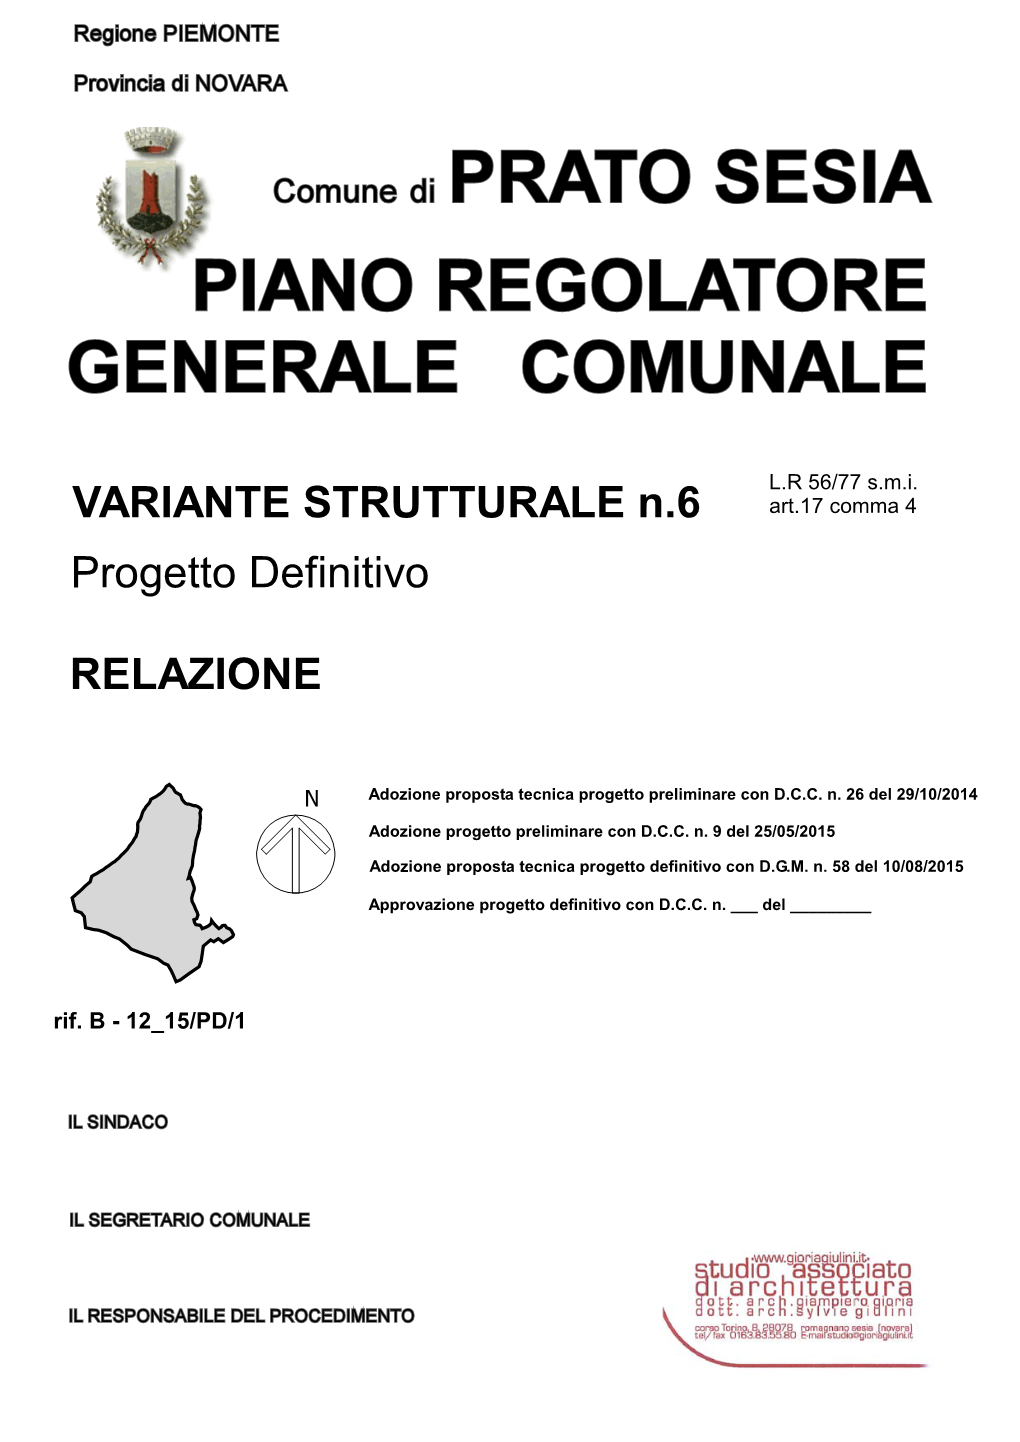 RELAZIONE VARIANTE STRUTTURALE N.6 Progetto